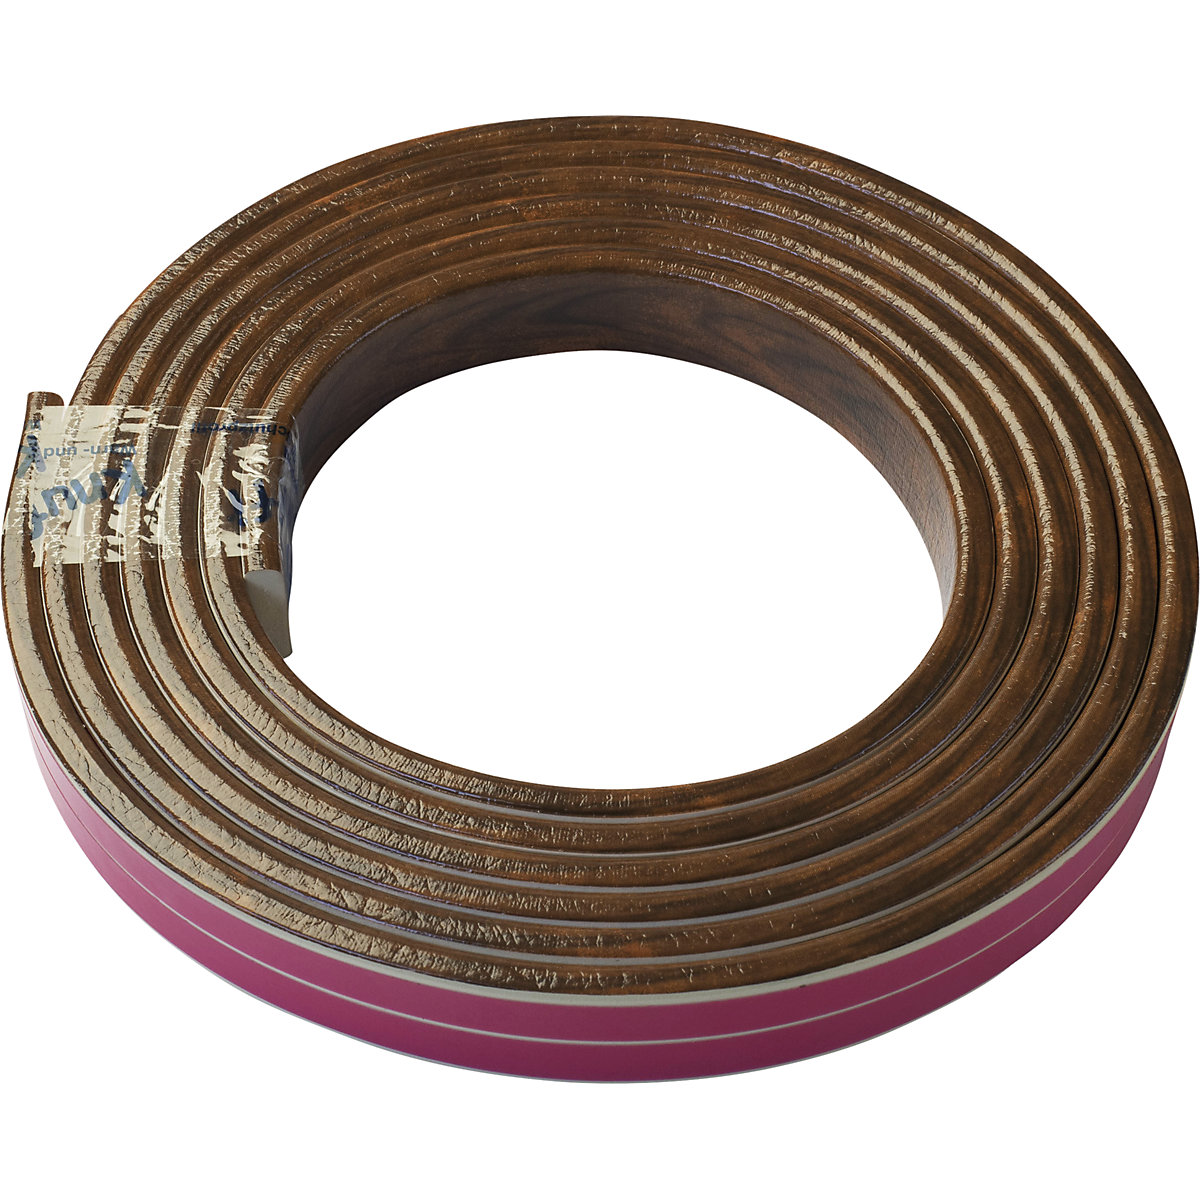 Protection des surfaces Knuffi® – SHG, type F, 1 rouleau de 5 m, façon bois cerise